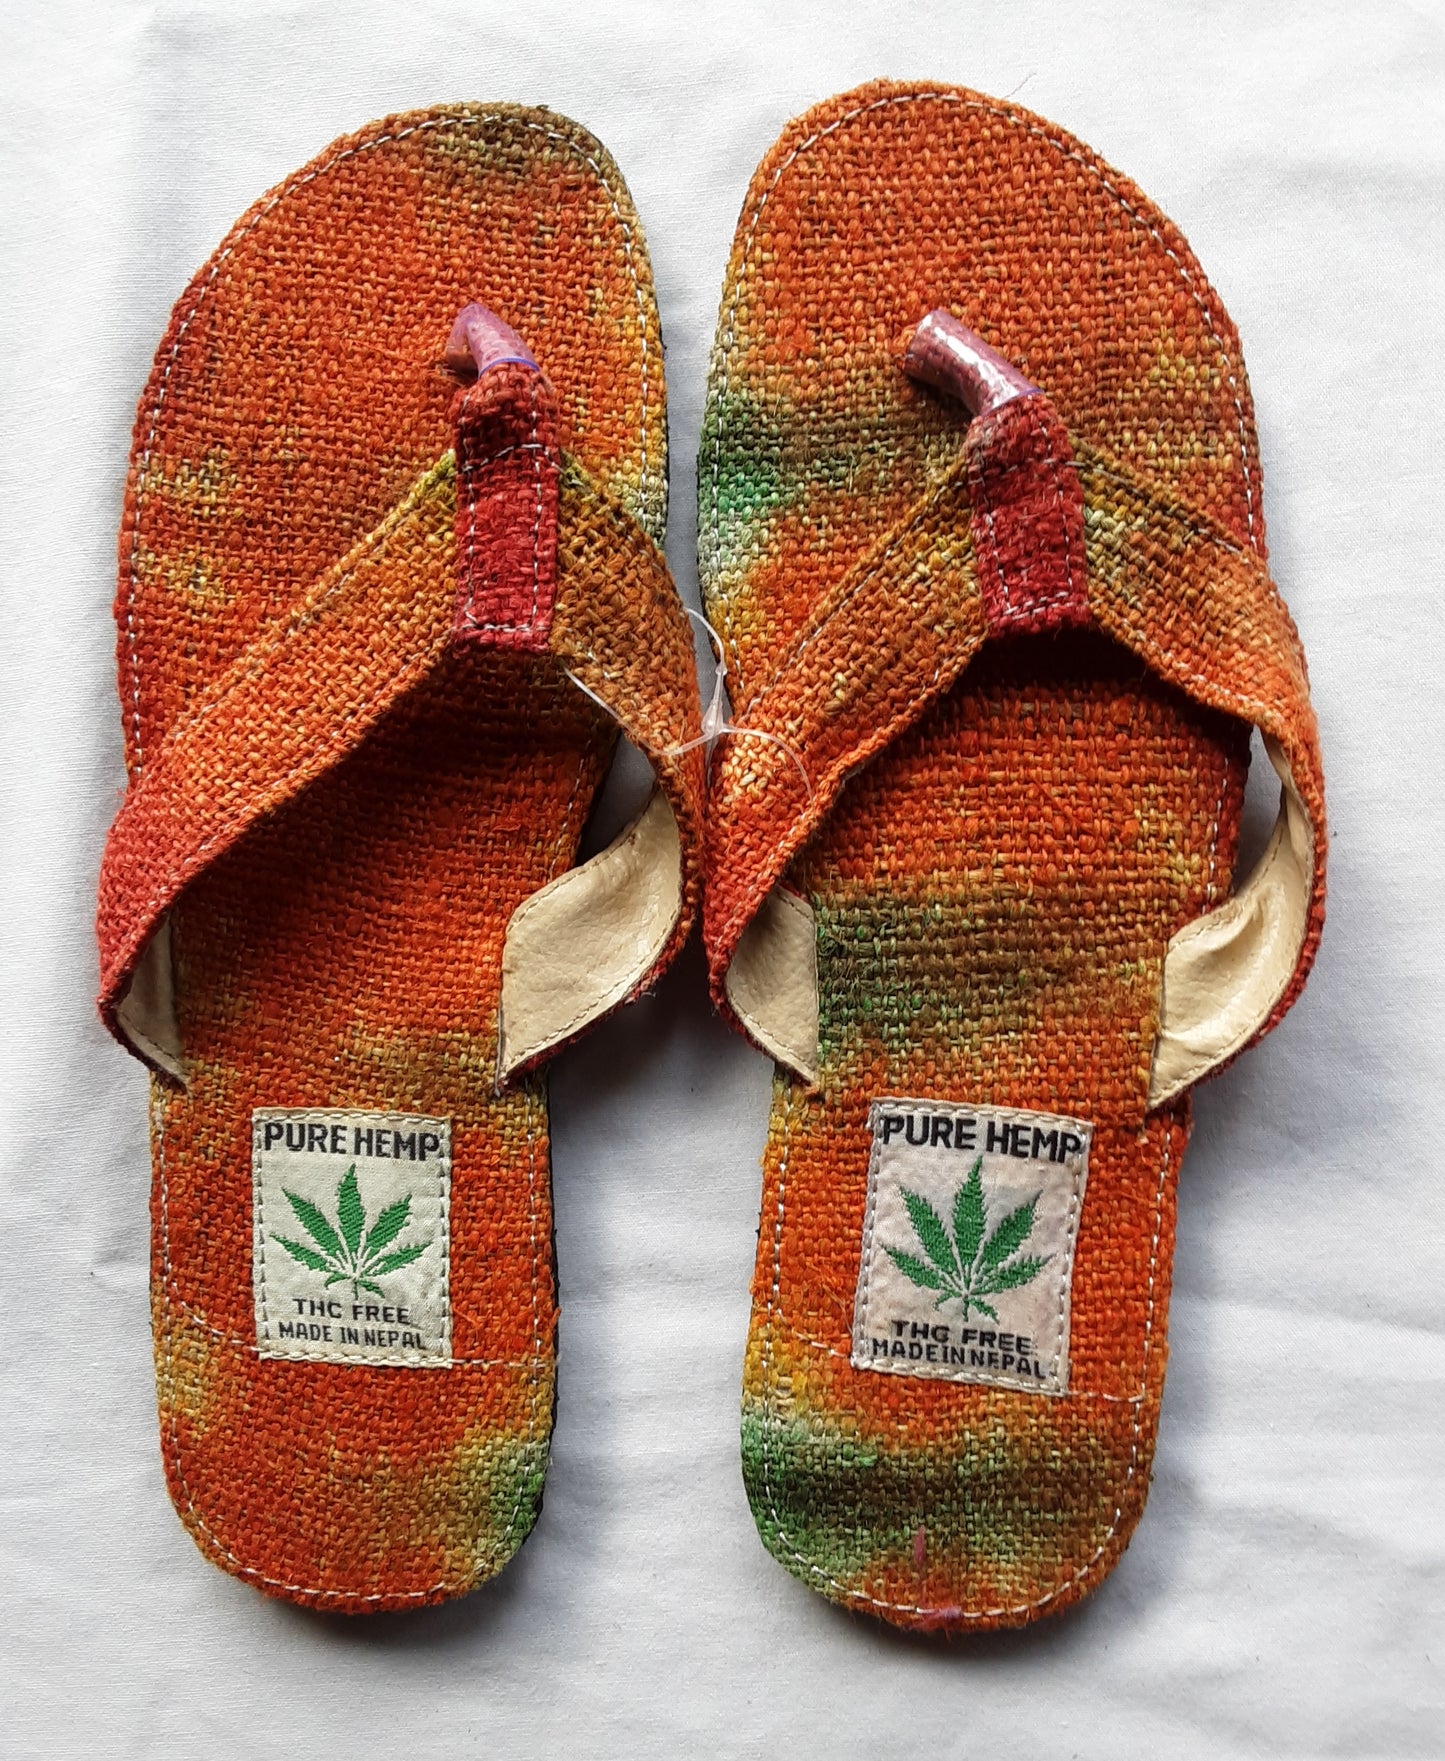 Handmade Colorful Nepalese Hemp Sandals / Thongs / Slides / Flip-flops / Jandals - Orange Tie-dye